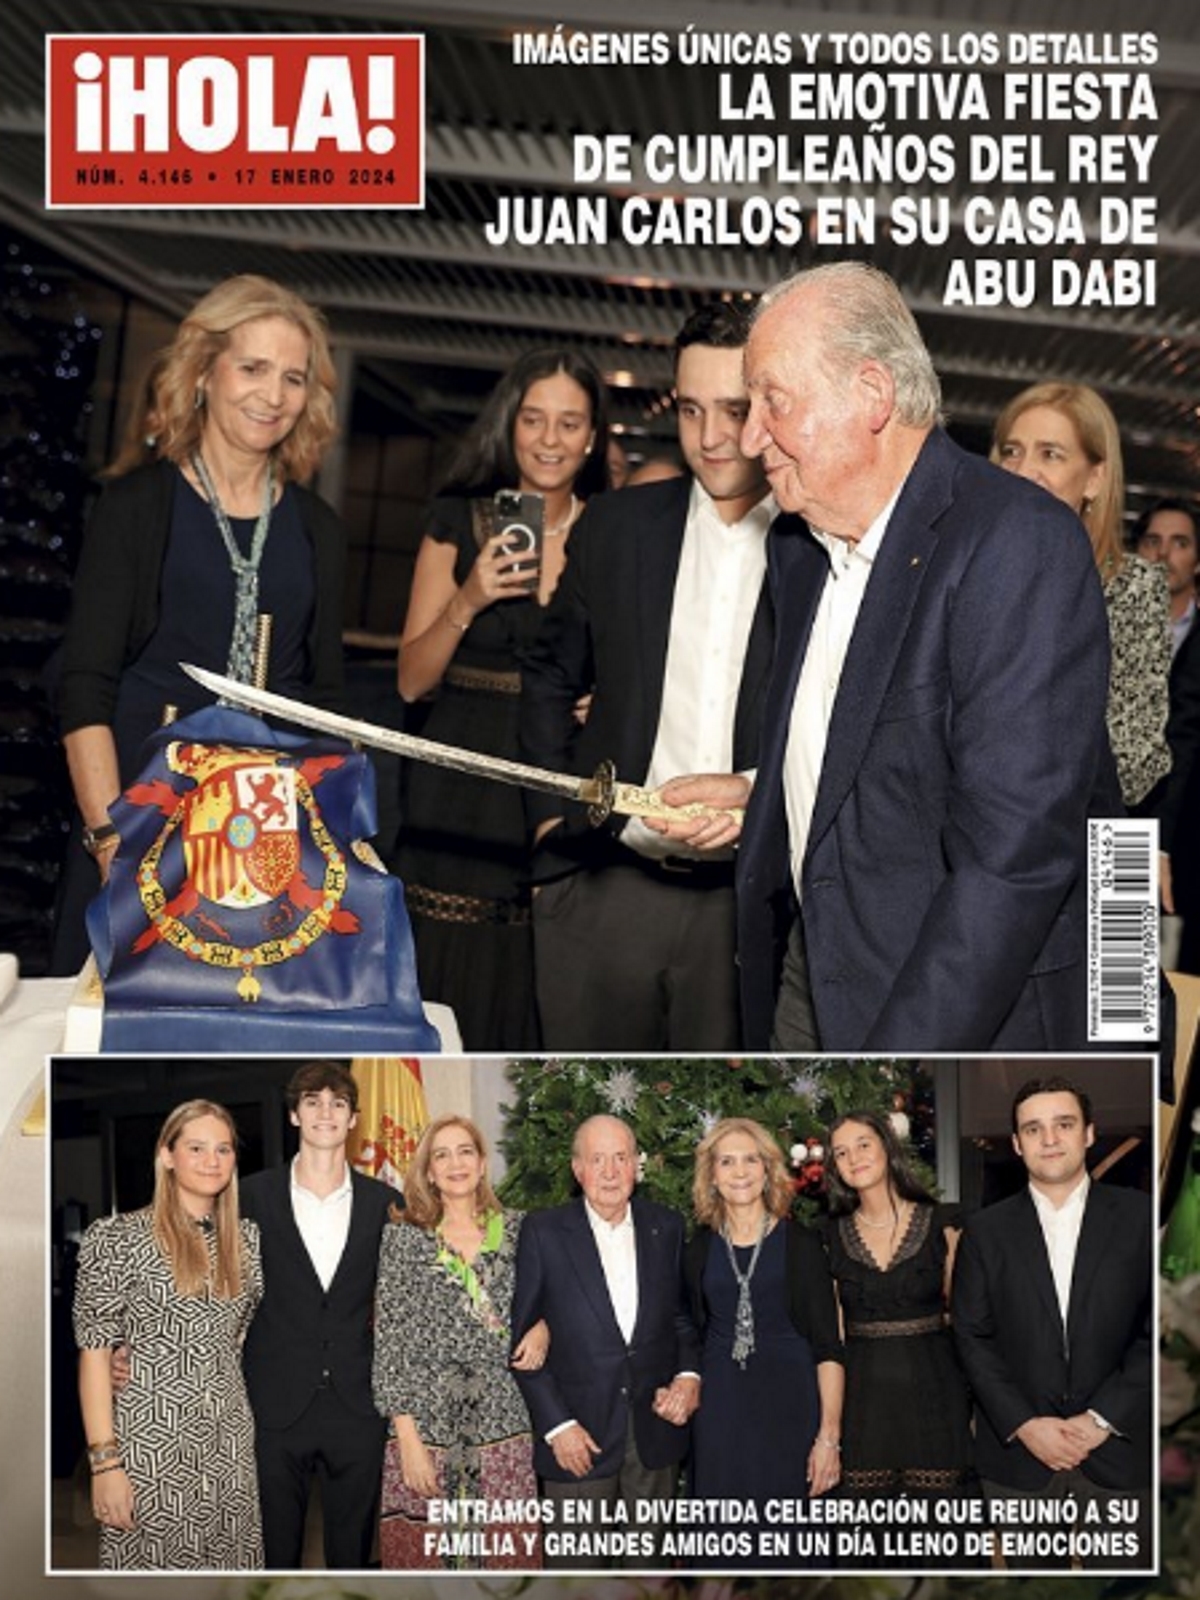 Las fotos del cumpleaos del Rey Juan Carlos: una tarta con su estandarte, discursos, una invitada no esperada...